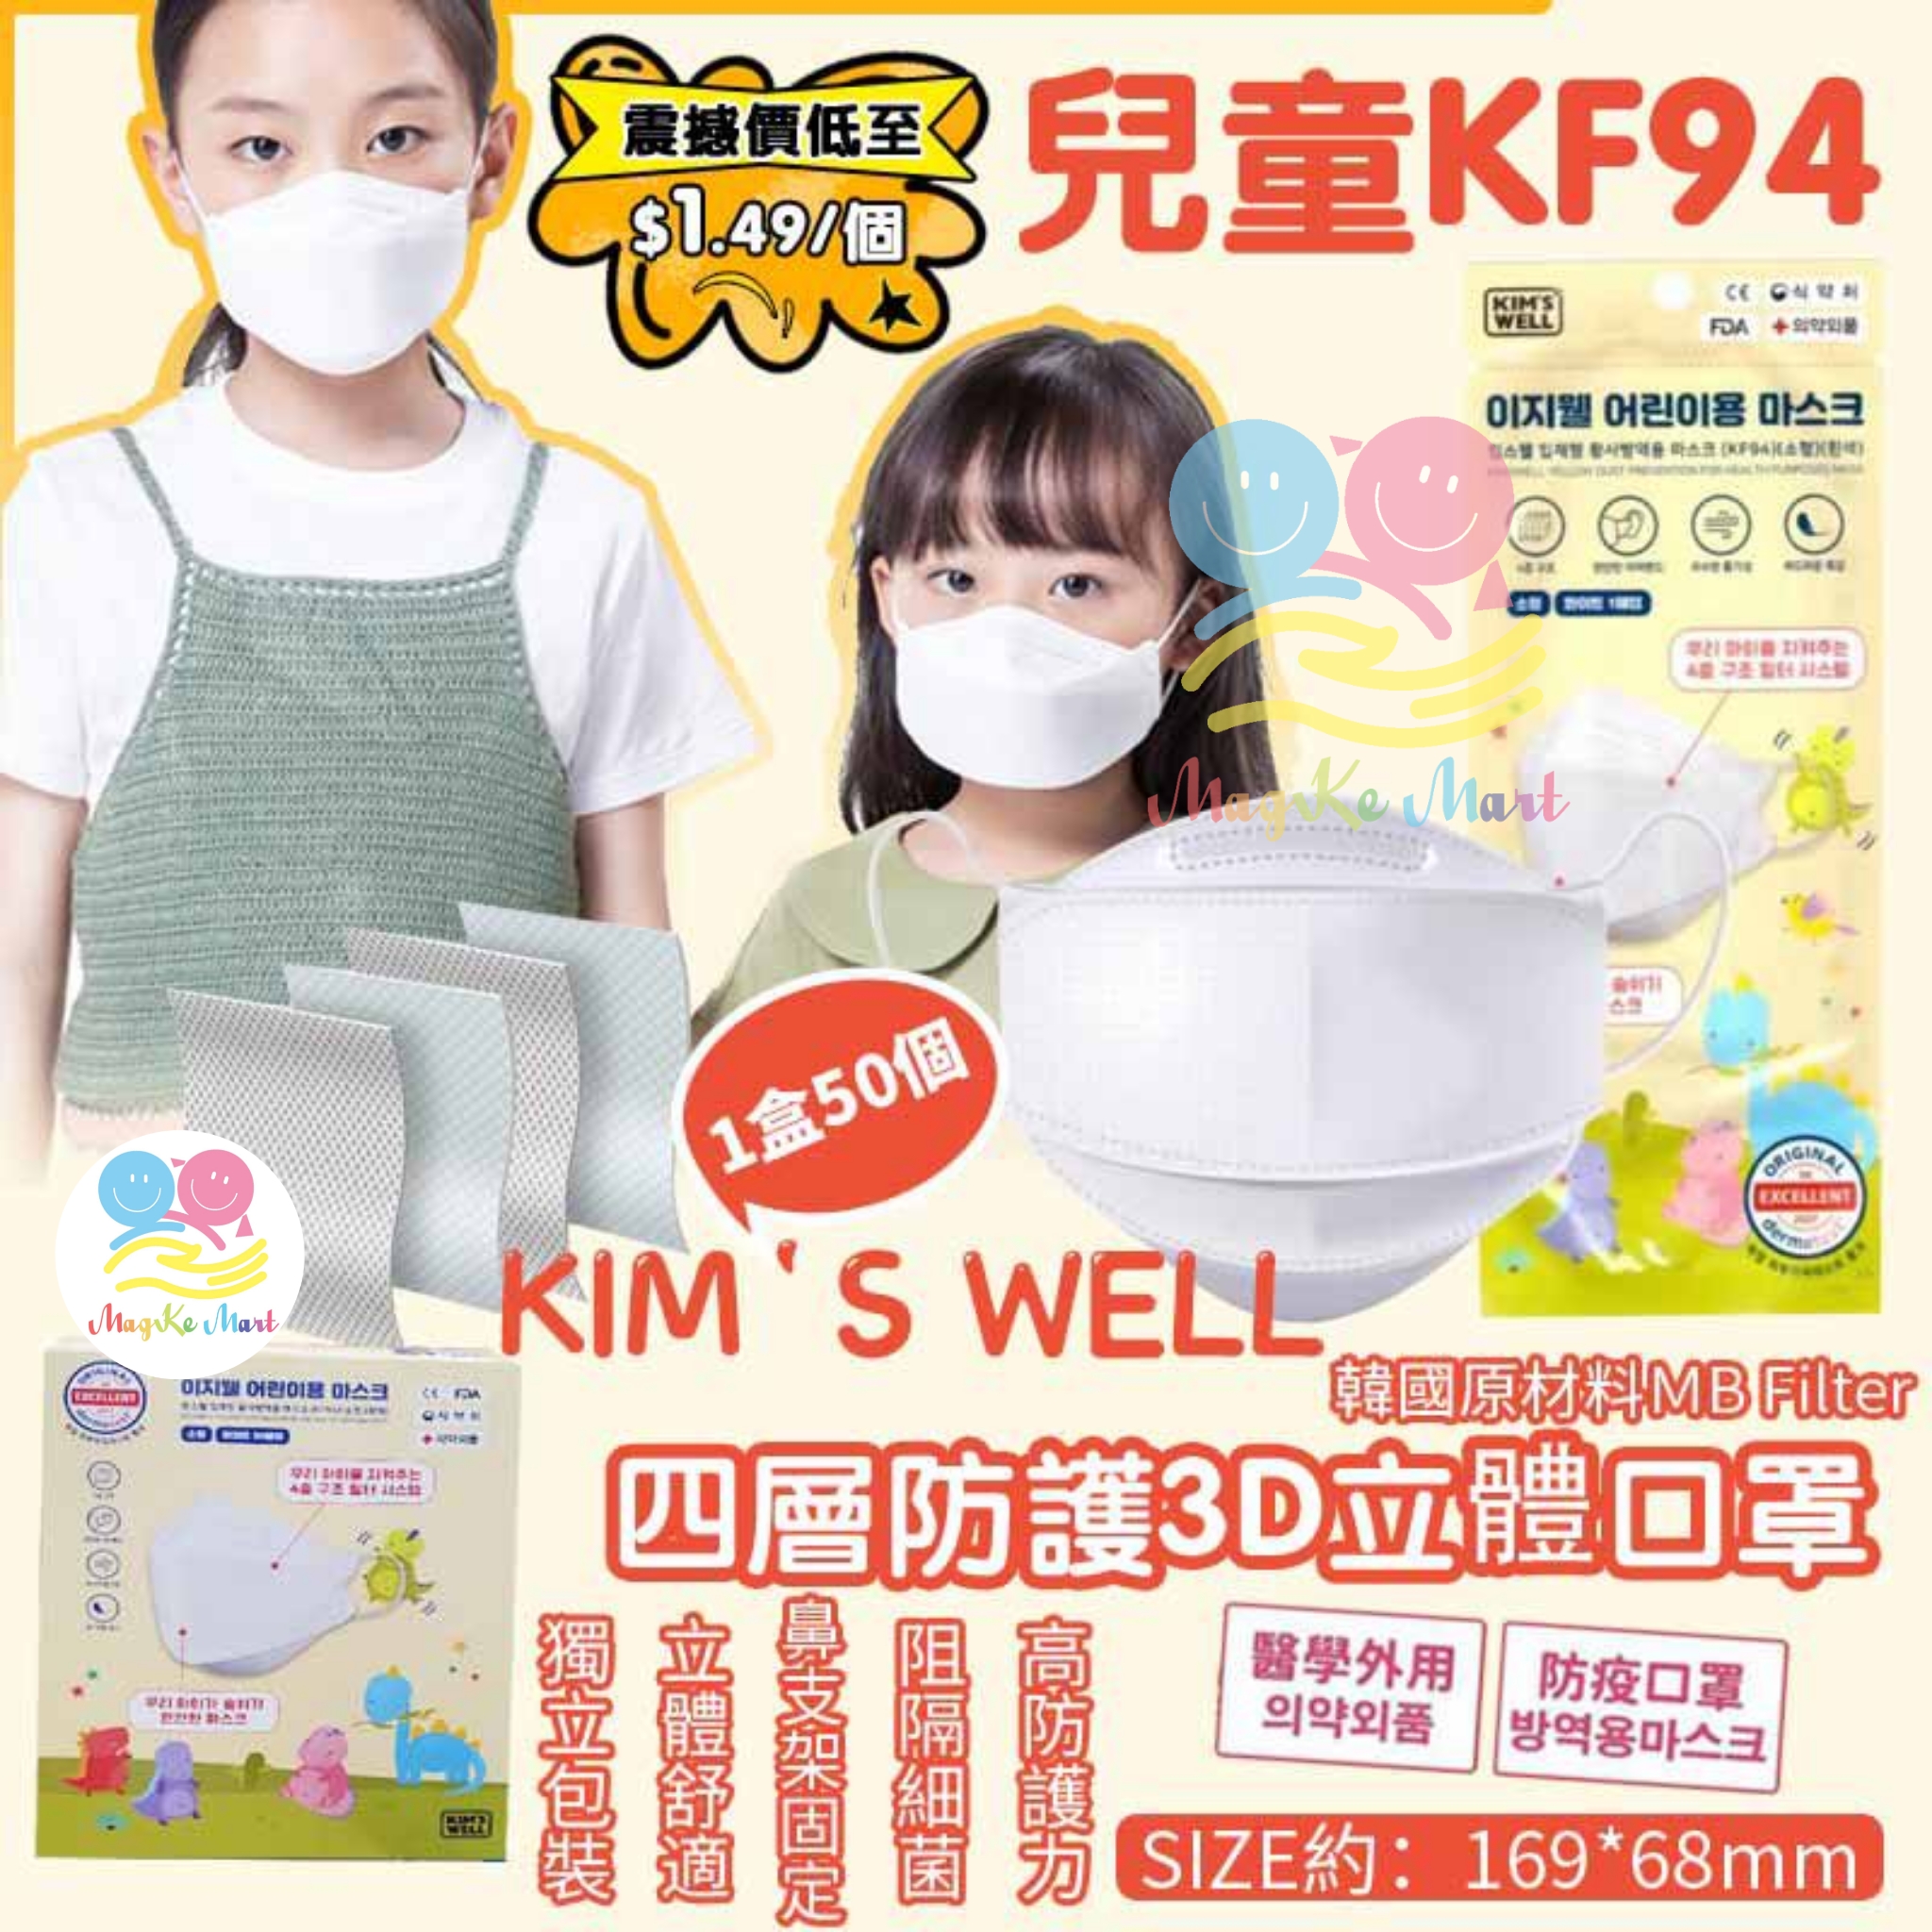 韓國 Kim’s well 兒童KF94四層防護3D立體口罩(1盒50個)(獨立包裝)